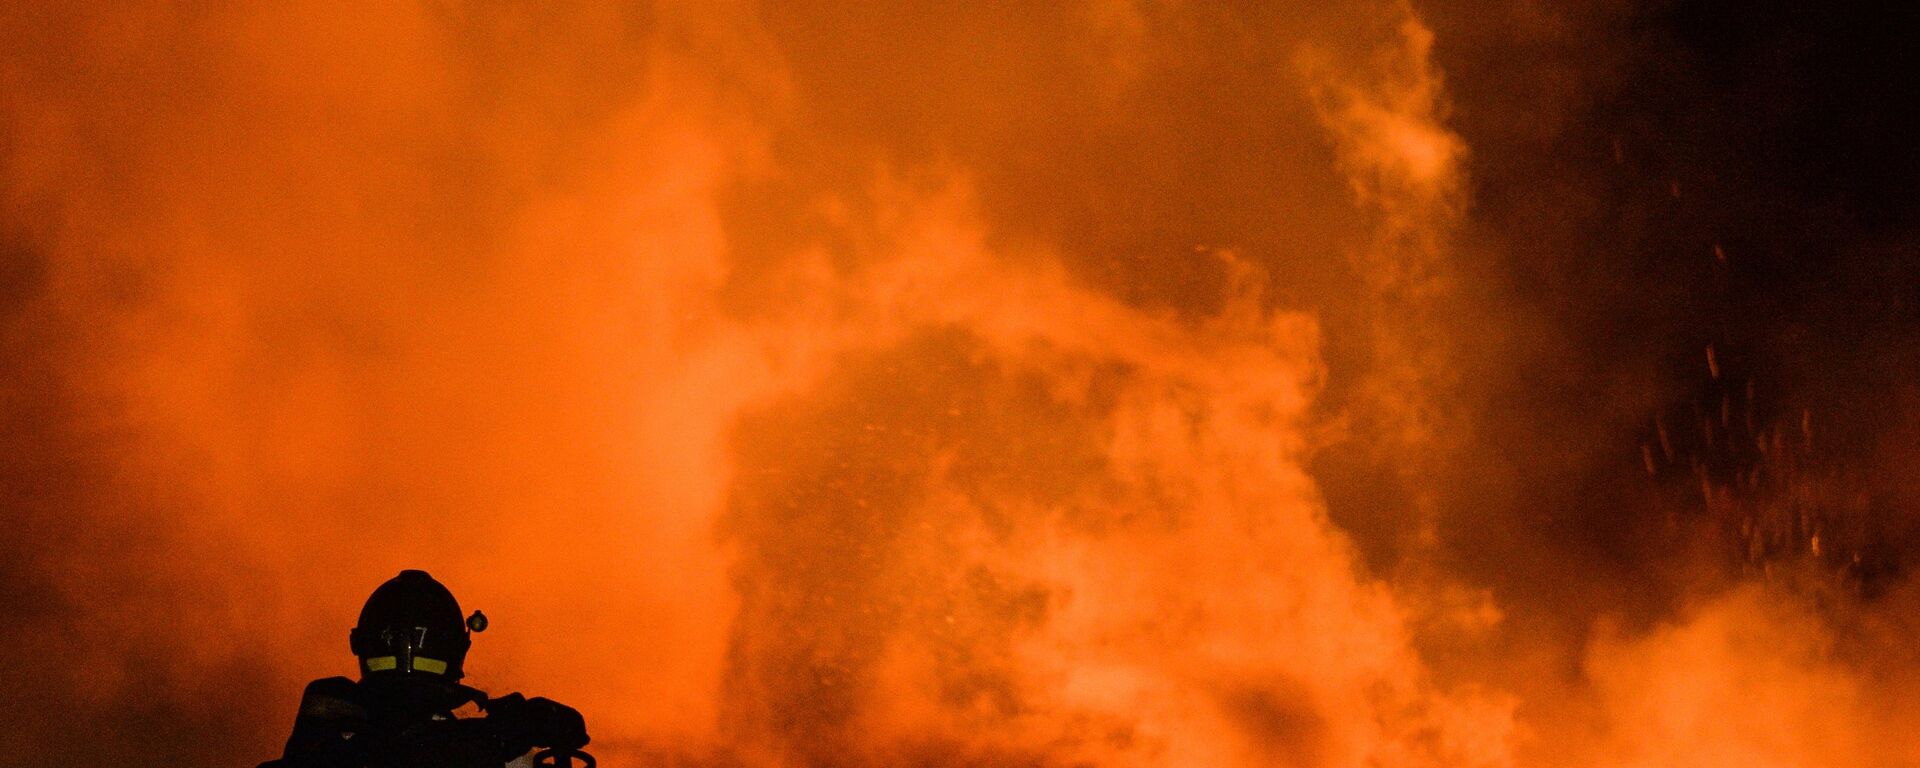 Архивное фото сотрудника пожарно-спасательного подразделения МЧС на тушении возгорания - Sputnik Латвия, 1920, 03.07.2021